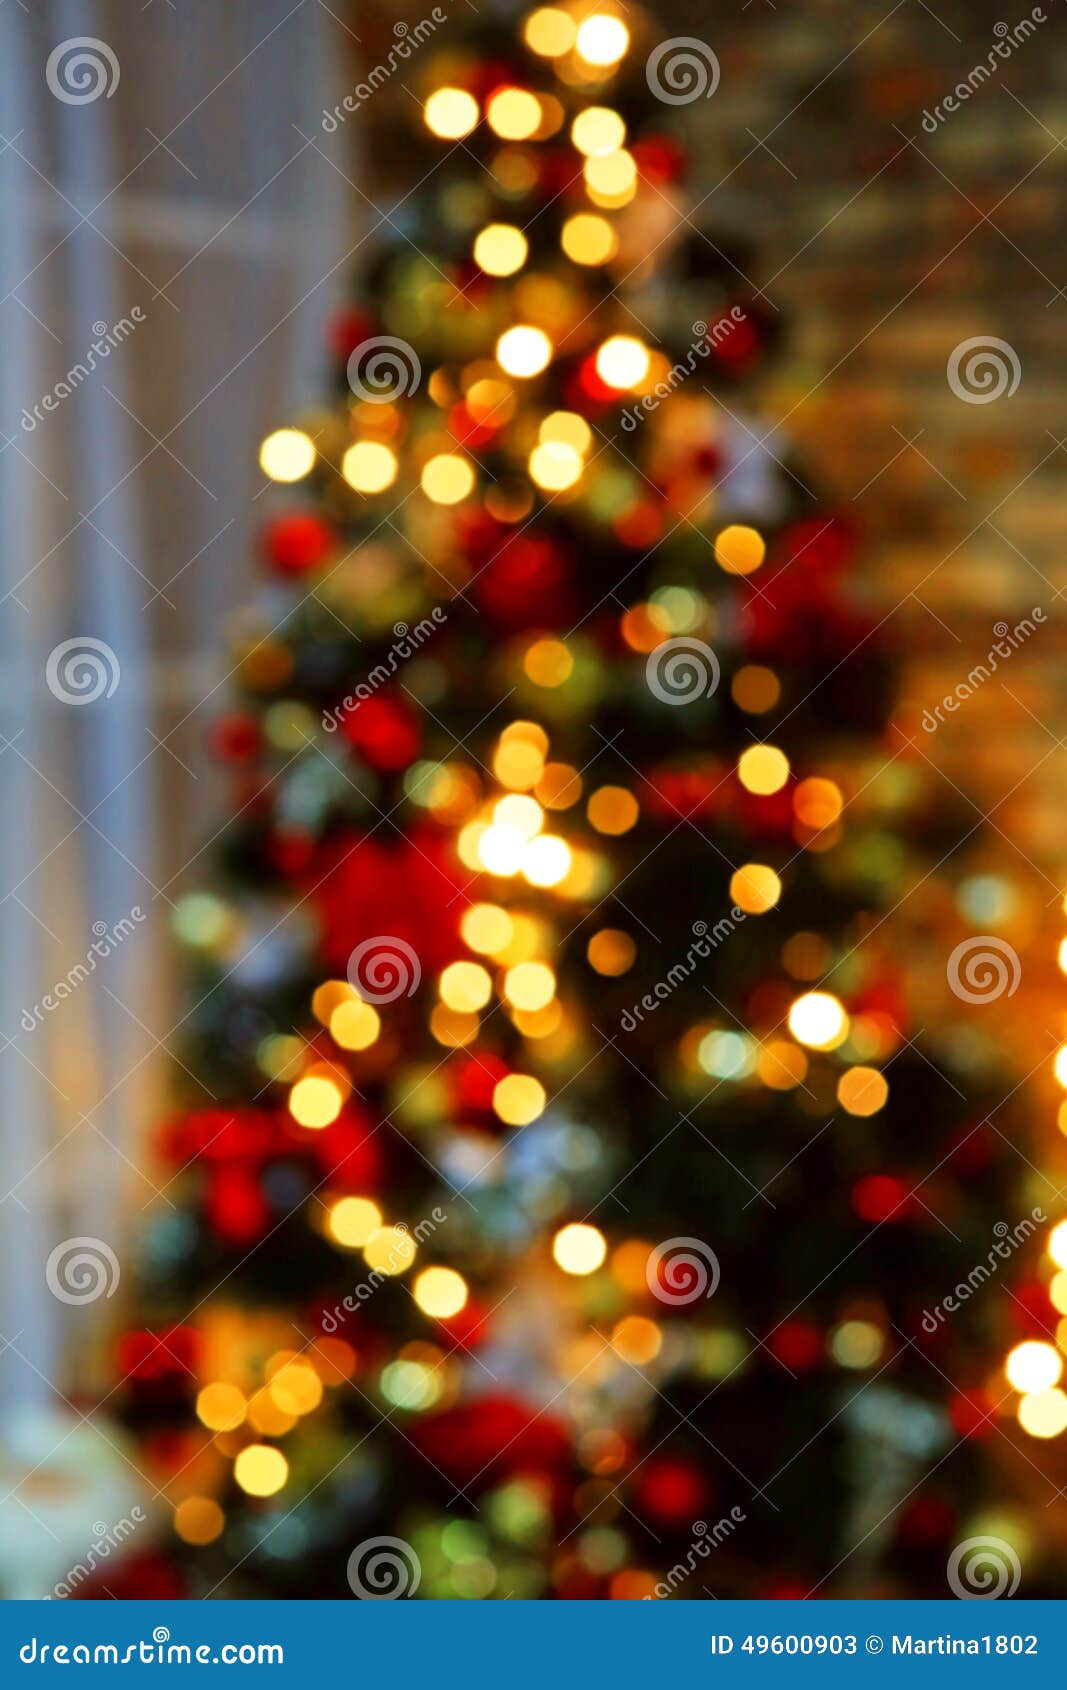 Bokeh Christmas lights stock image. Image of deco, colorful - 49600903